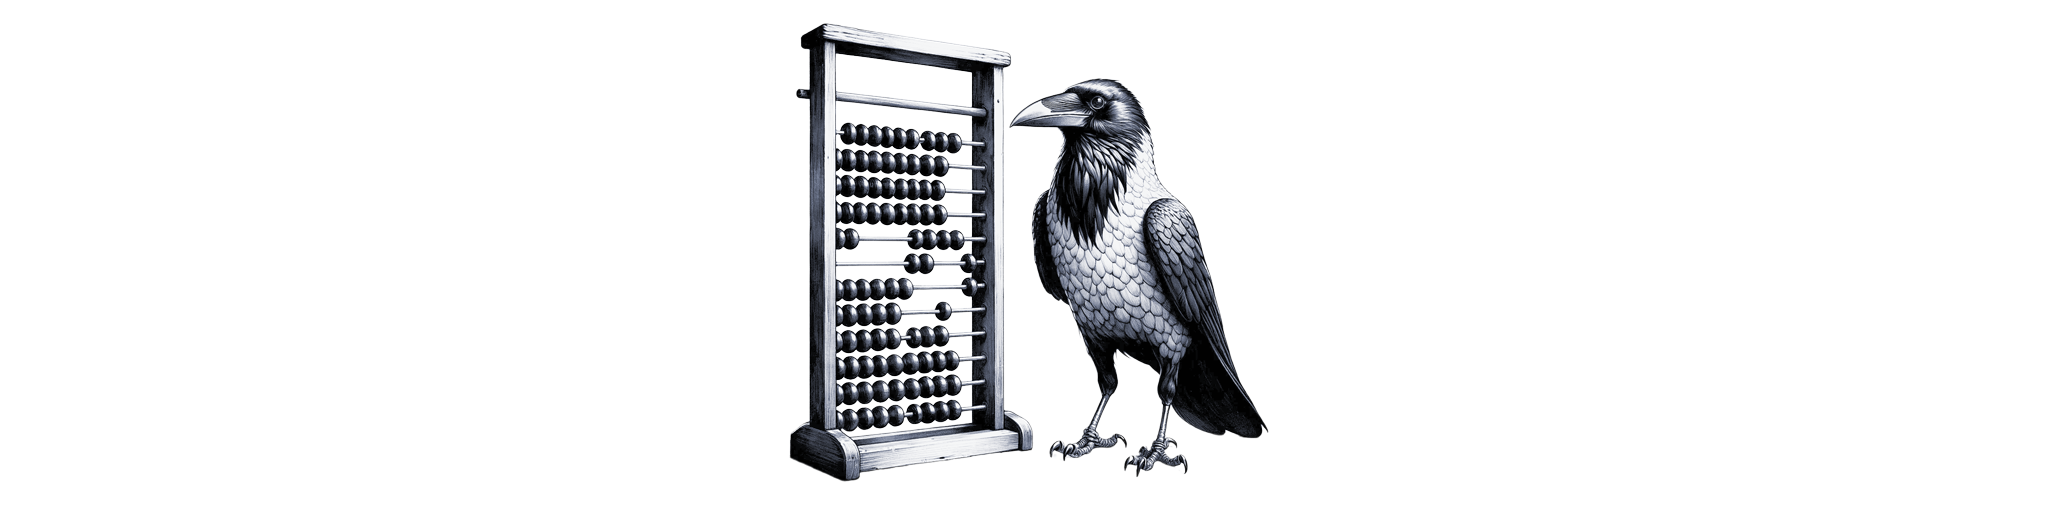 Abacus crow